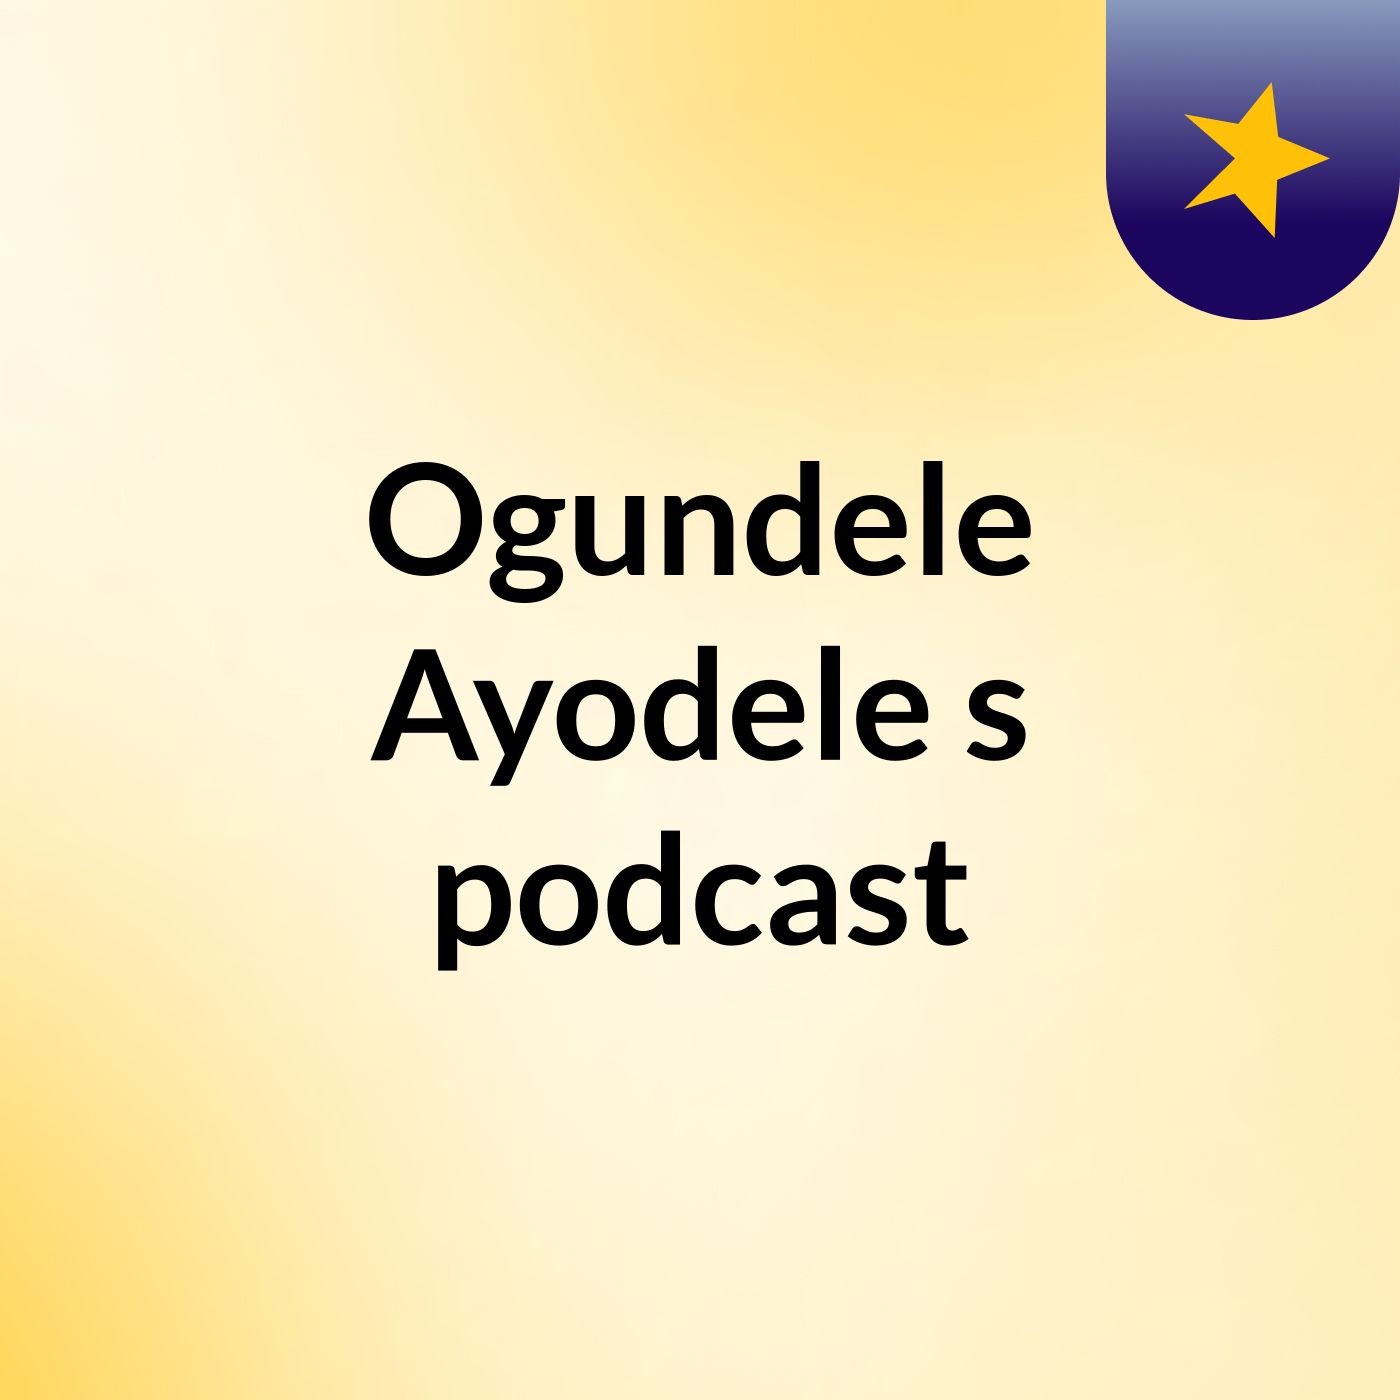 Ogundele Ayodele's podcast